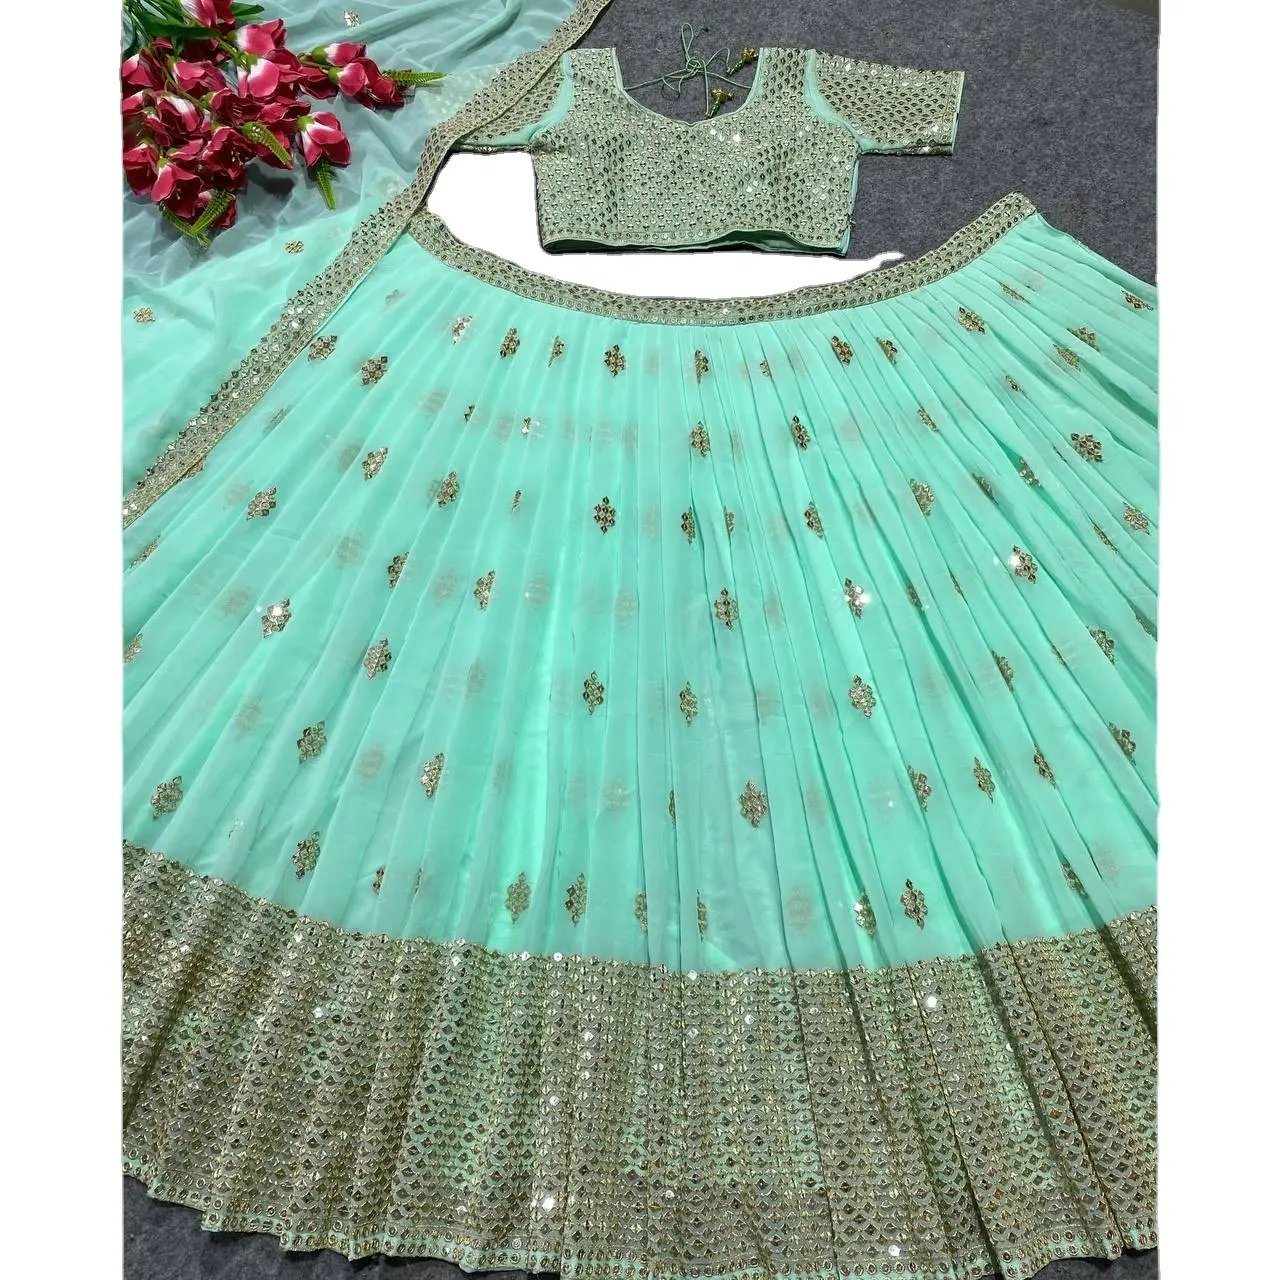 פולפרי עבודה רקמה lehenga choli עבור שמלת כלה לייצוא ברחבי העולם מיצואן הודי